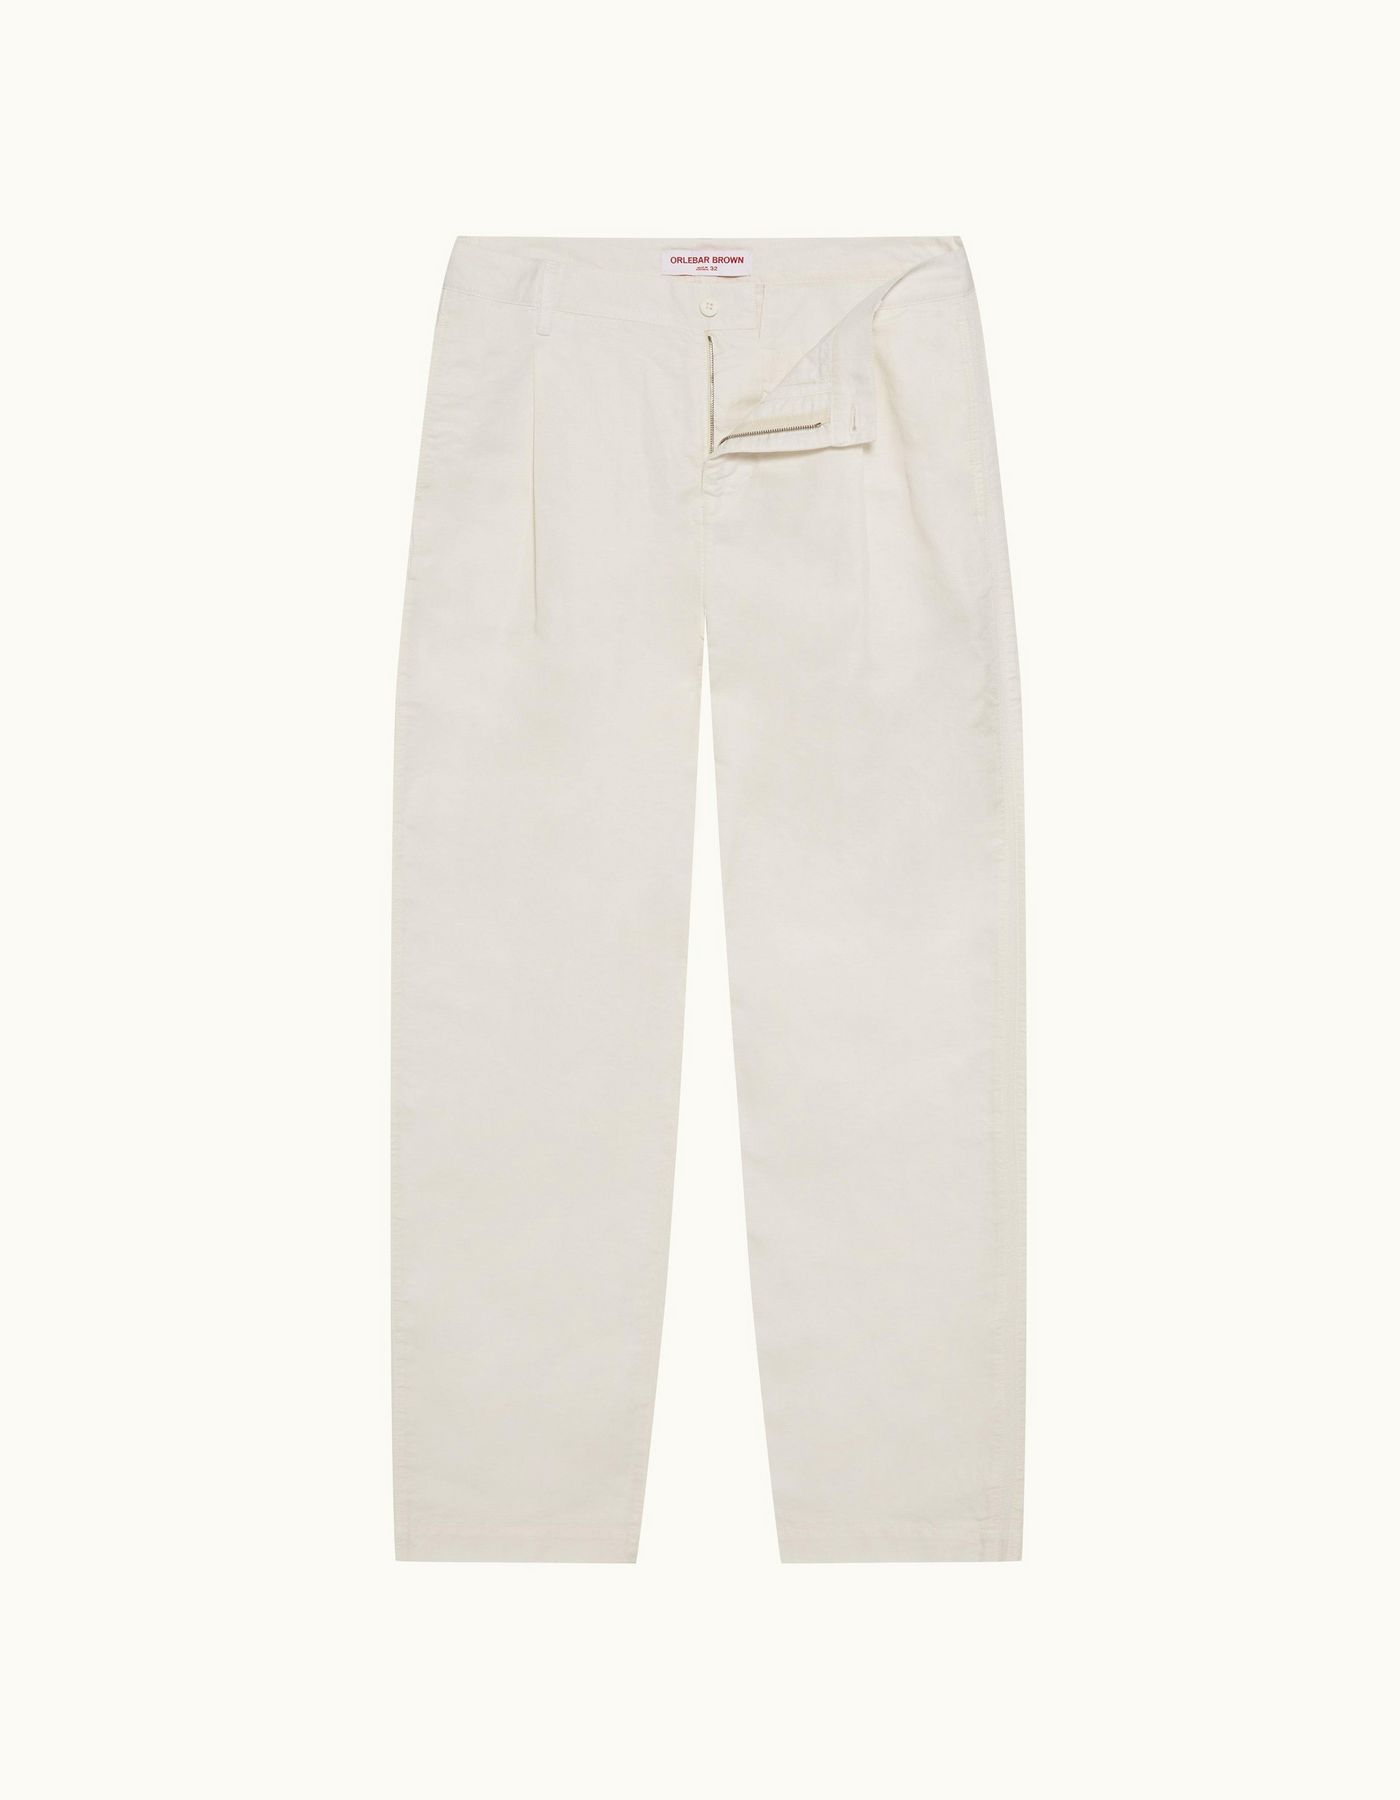 Dunmore Linen - Mens White Sand Cotton-Linen Trousers